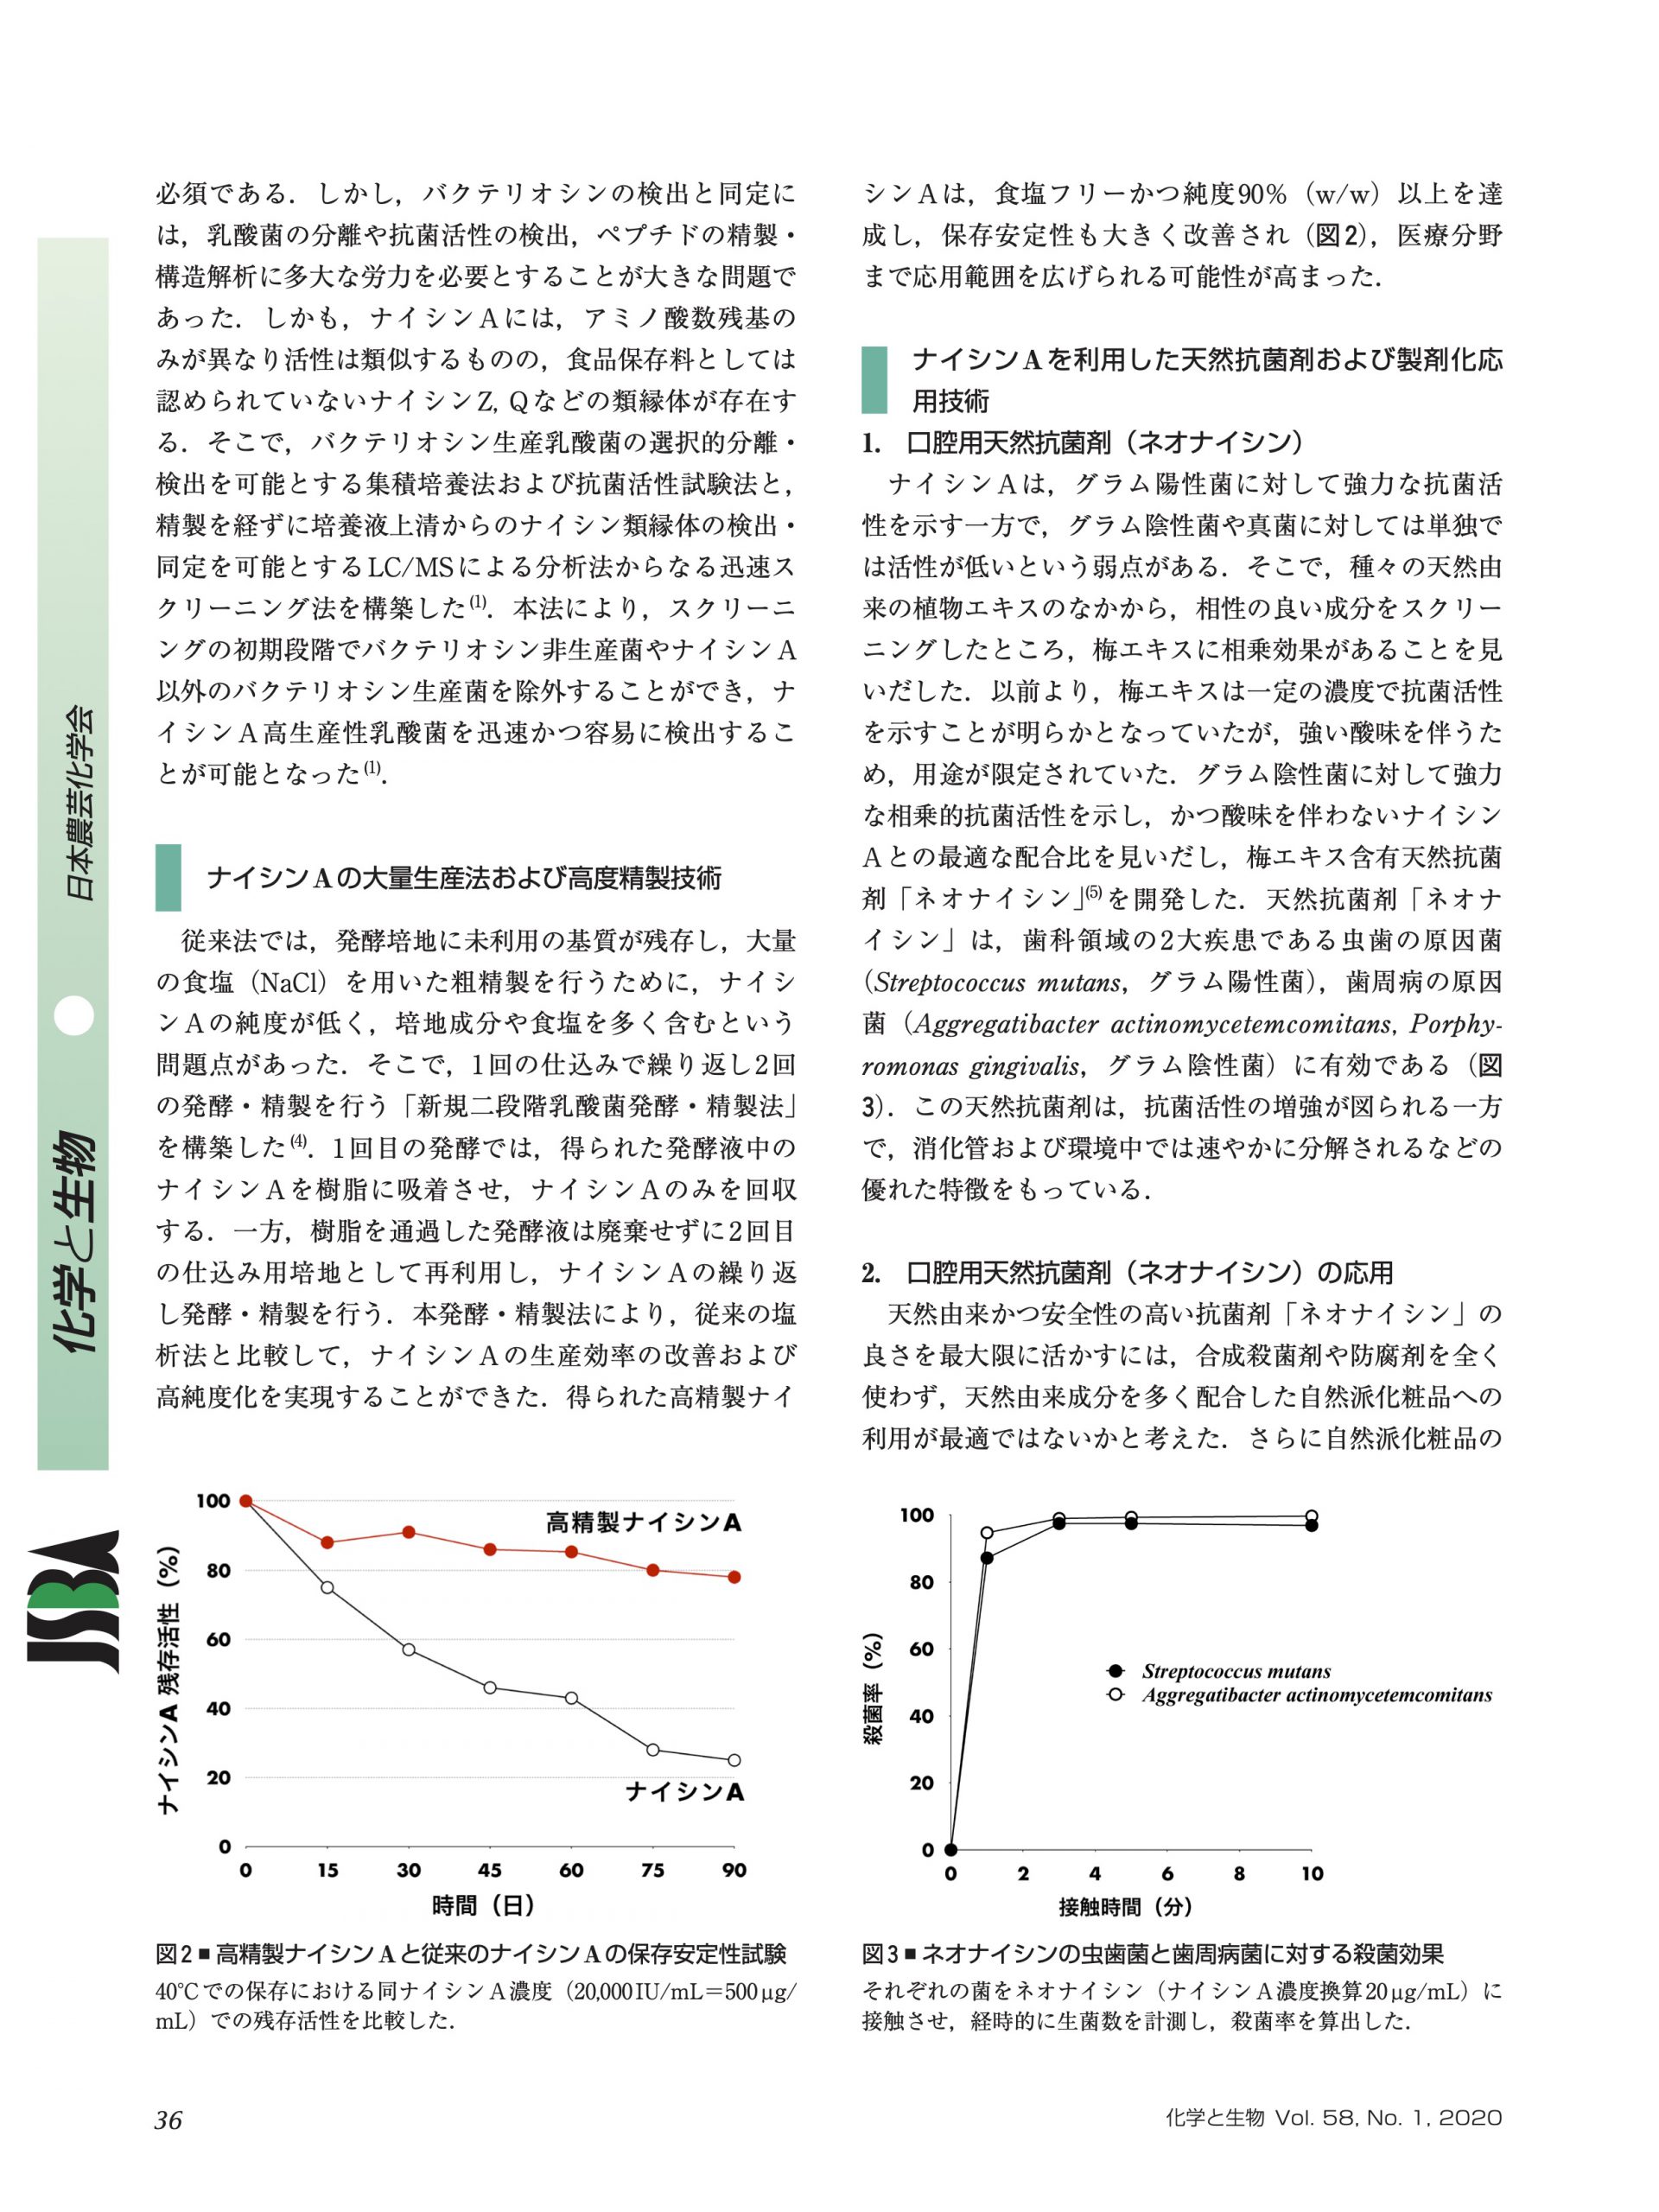 日本農芸化学会の学会誌「化学と生物」にオーラルピースの学術論文が掲載されました - オーラルピース／ORALPEACE